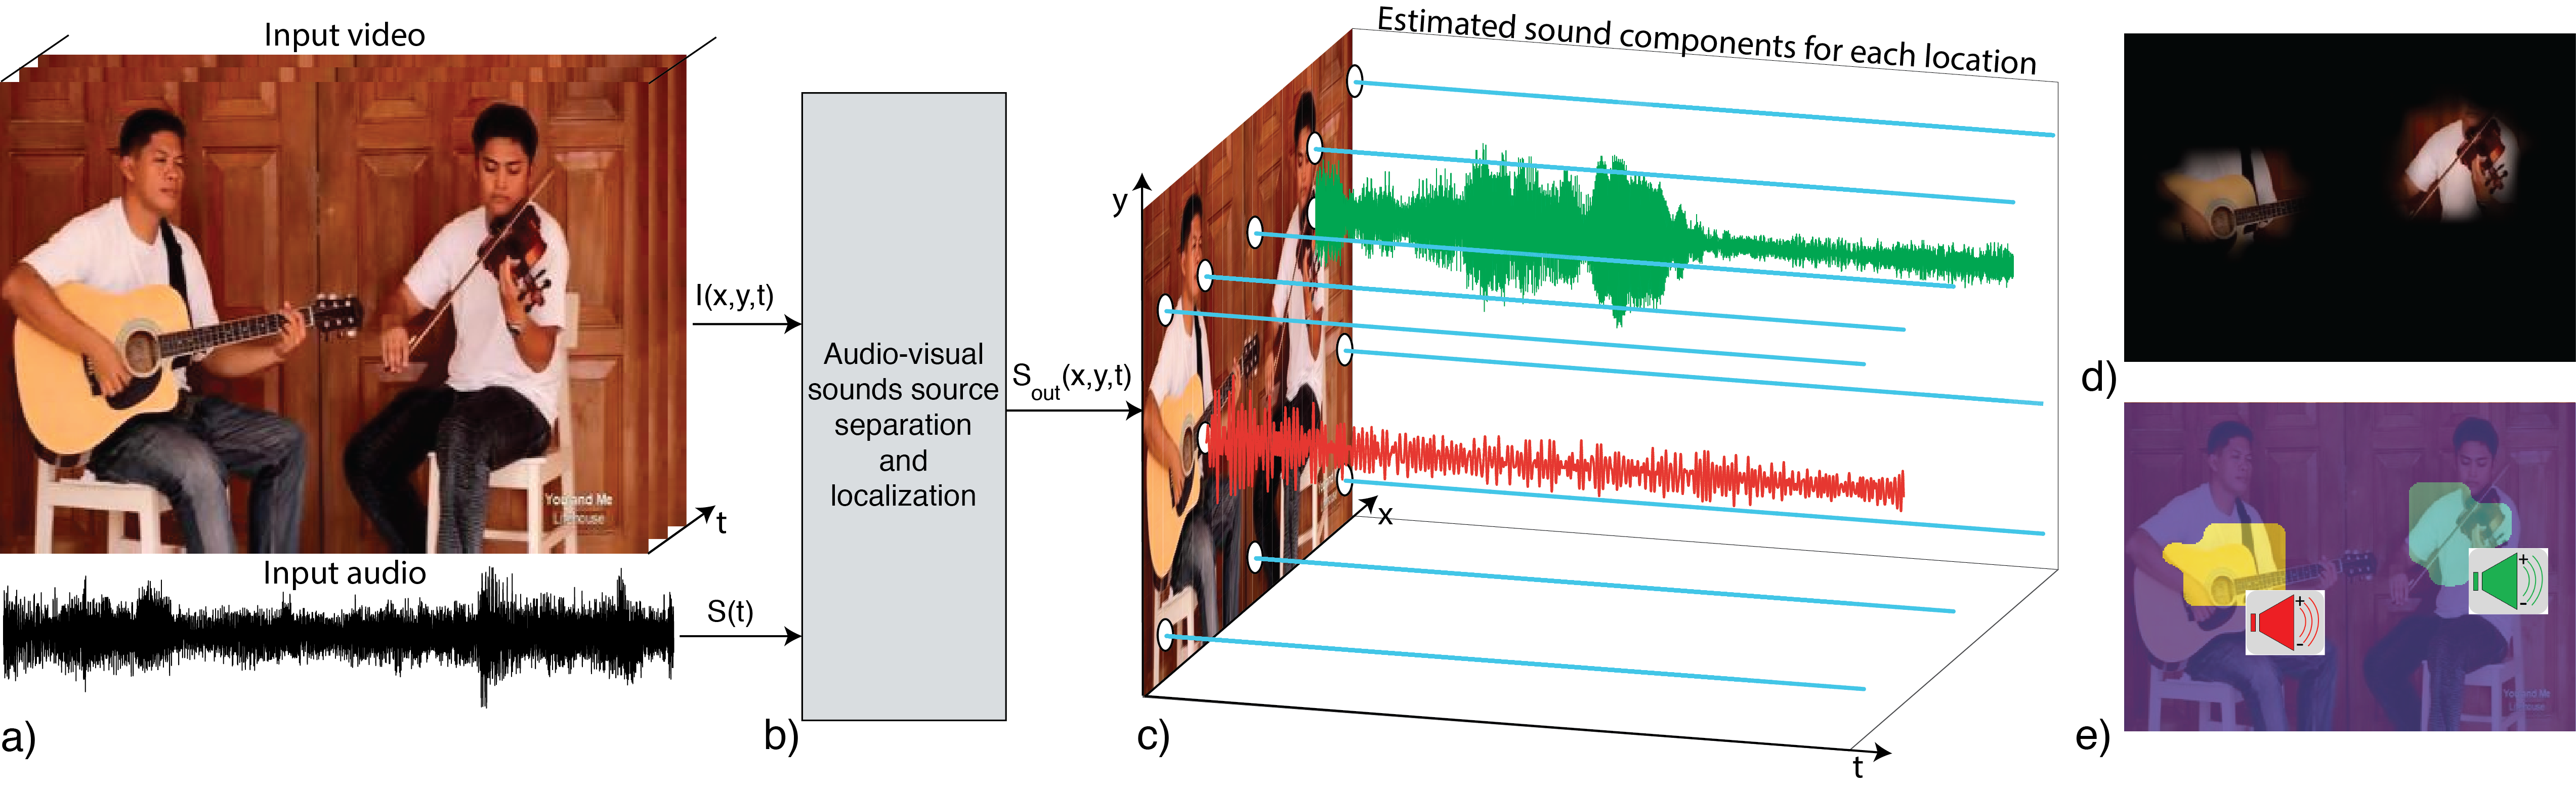 動画の演奏楽器をクリックするとその音だけを聞ける！ | MITの研究チームが動画から特定の楽器音を抽出するプログラムを作成